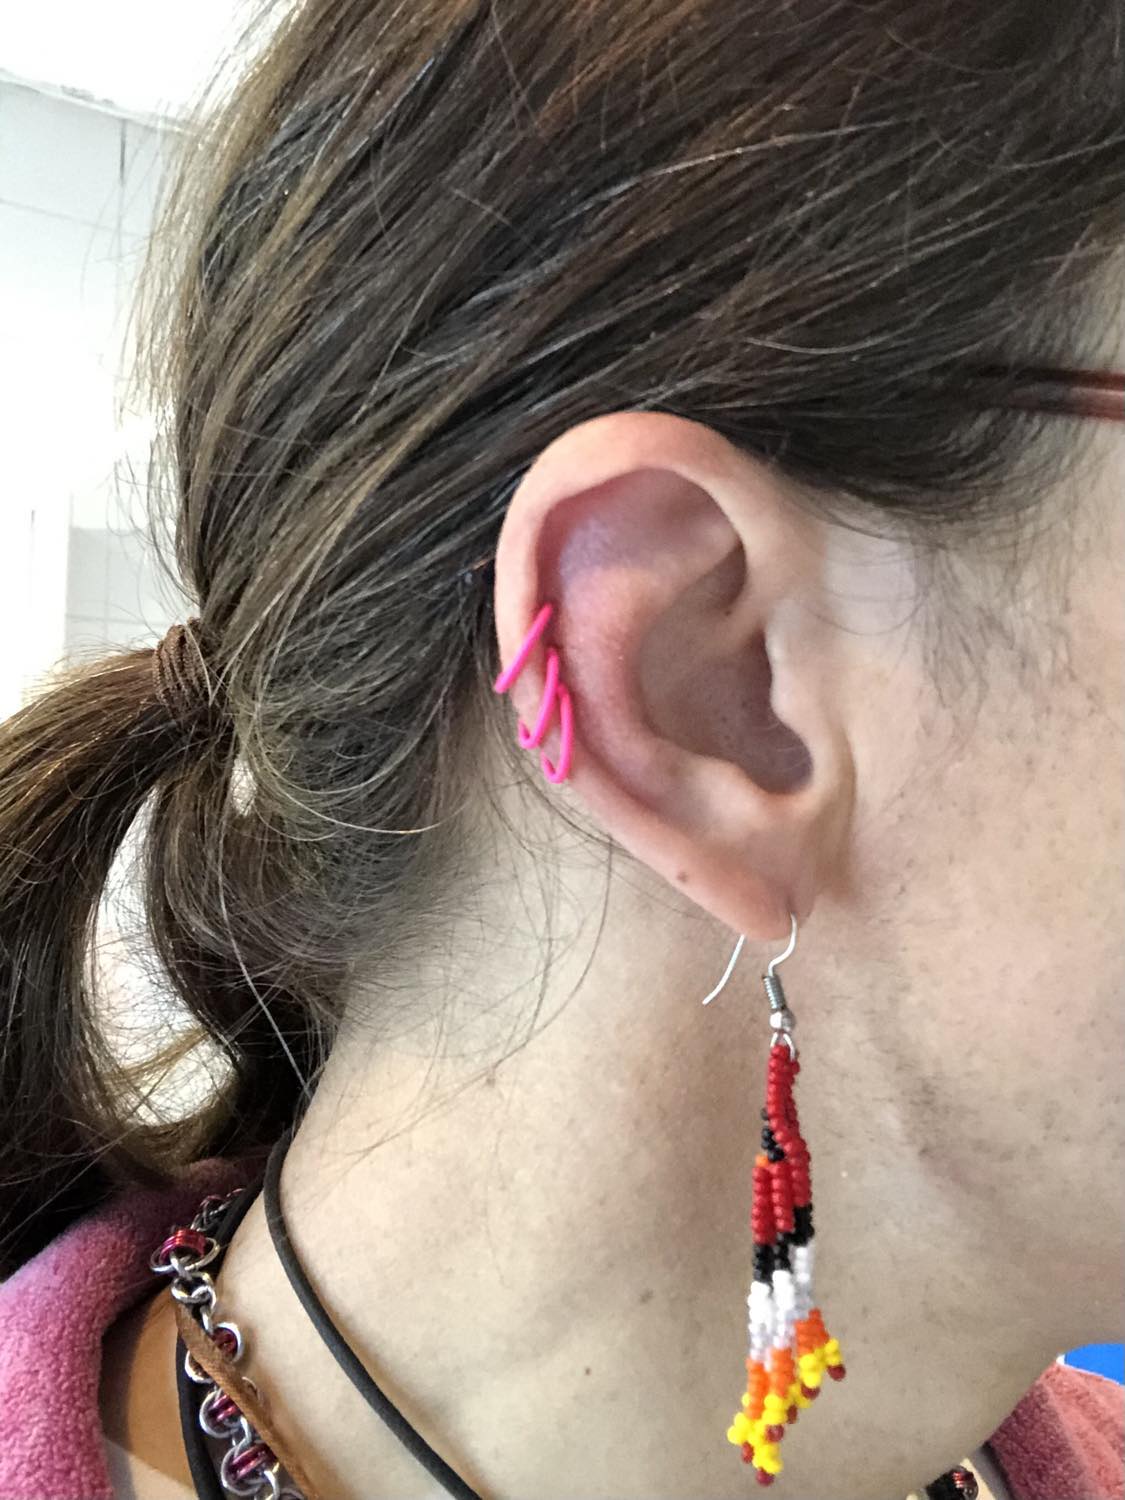 Kabutroid wearing three pink hoops in her helix piercings, and red indigenous beaded earrings in her initial lobe piercings.